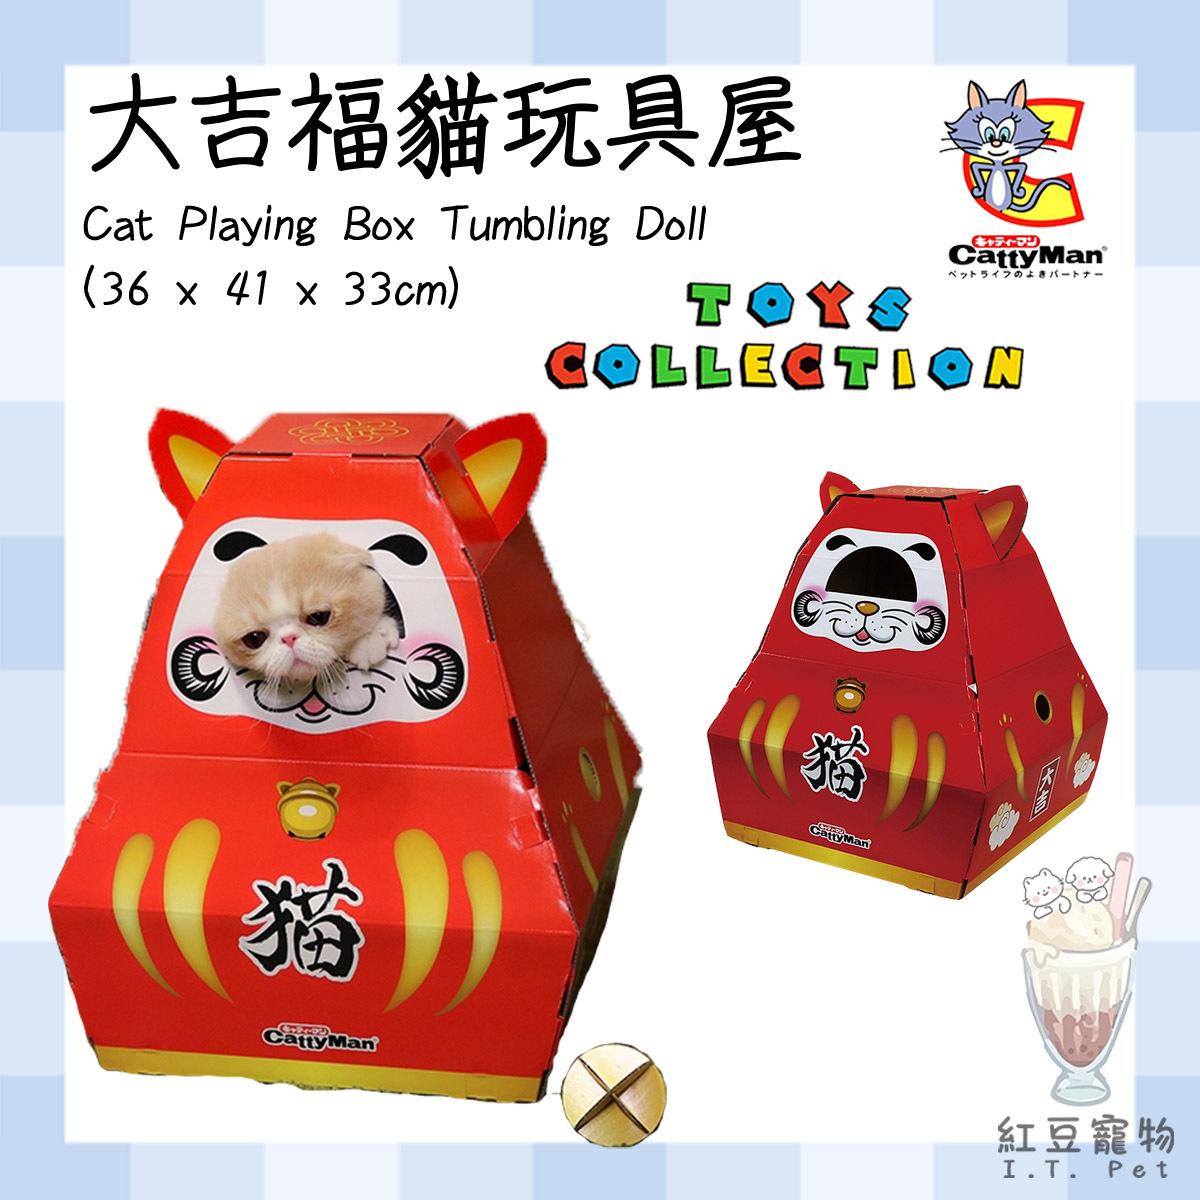 Cat Playing Box Tumbling Doll (36 x 41 x 33cm) #Catty #toy